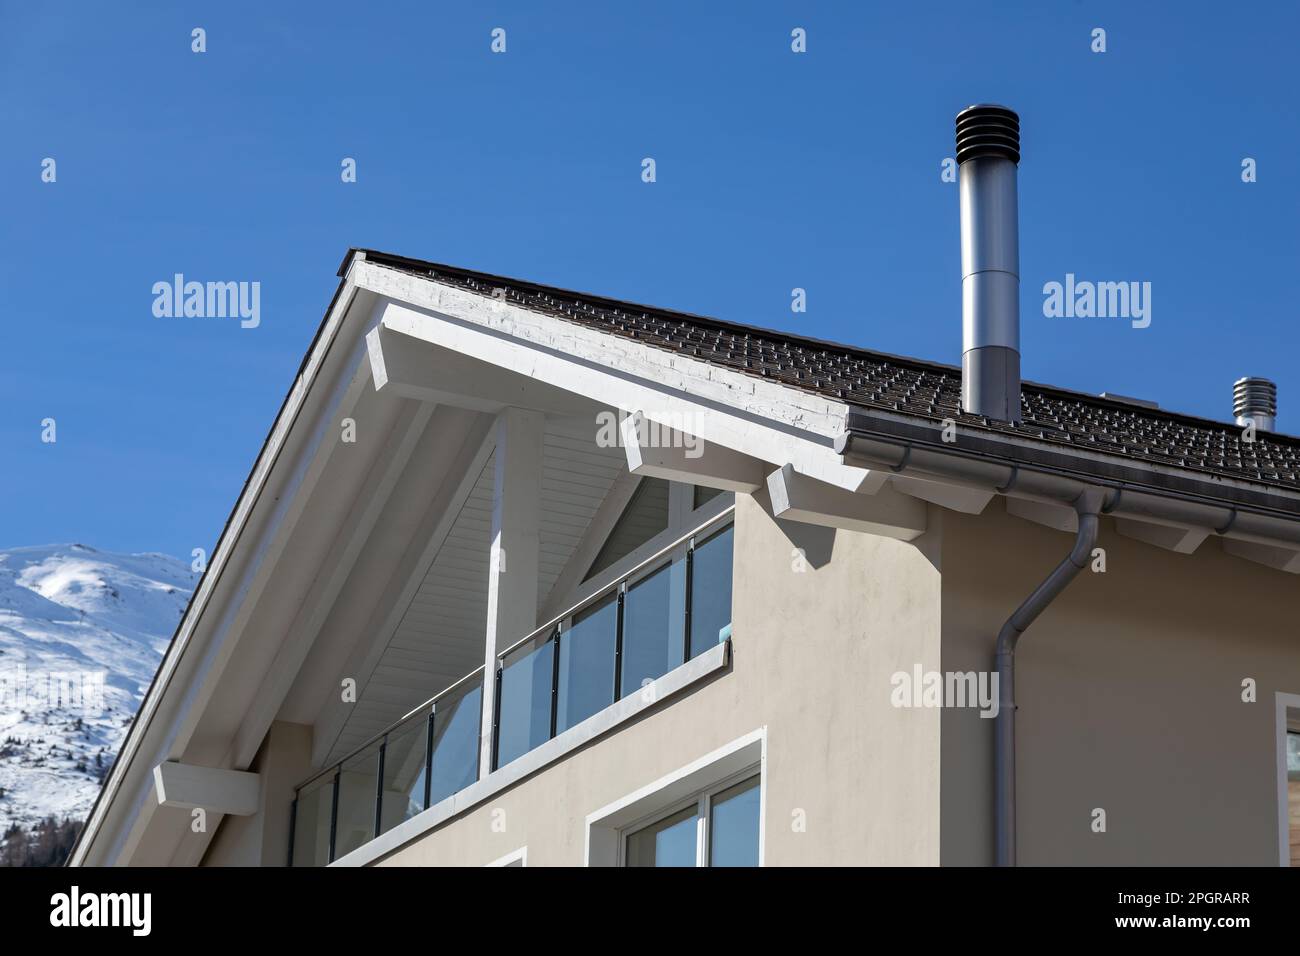 Rußiger Edelstahlschornstein auf dem Dach des Hauses in den alpen Stockfoto